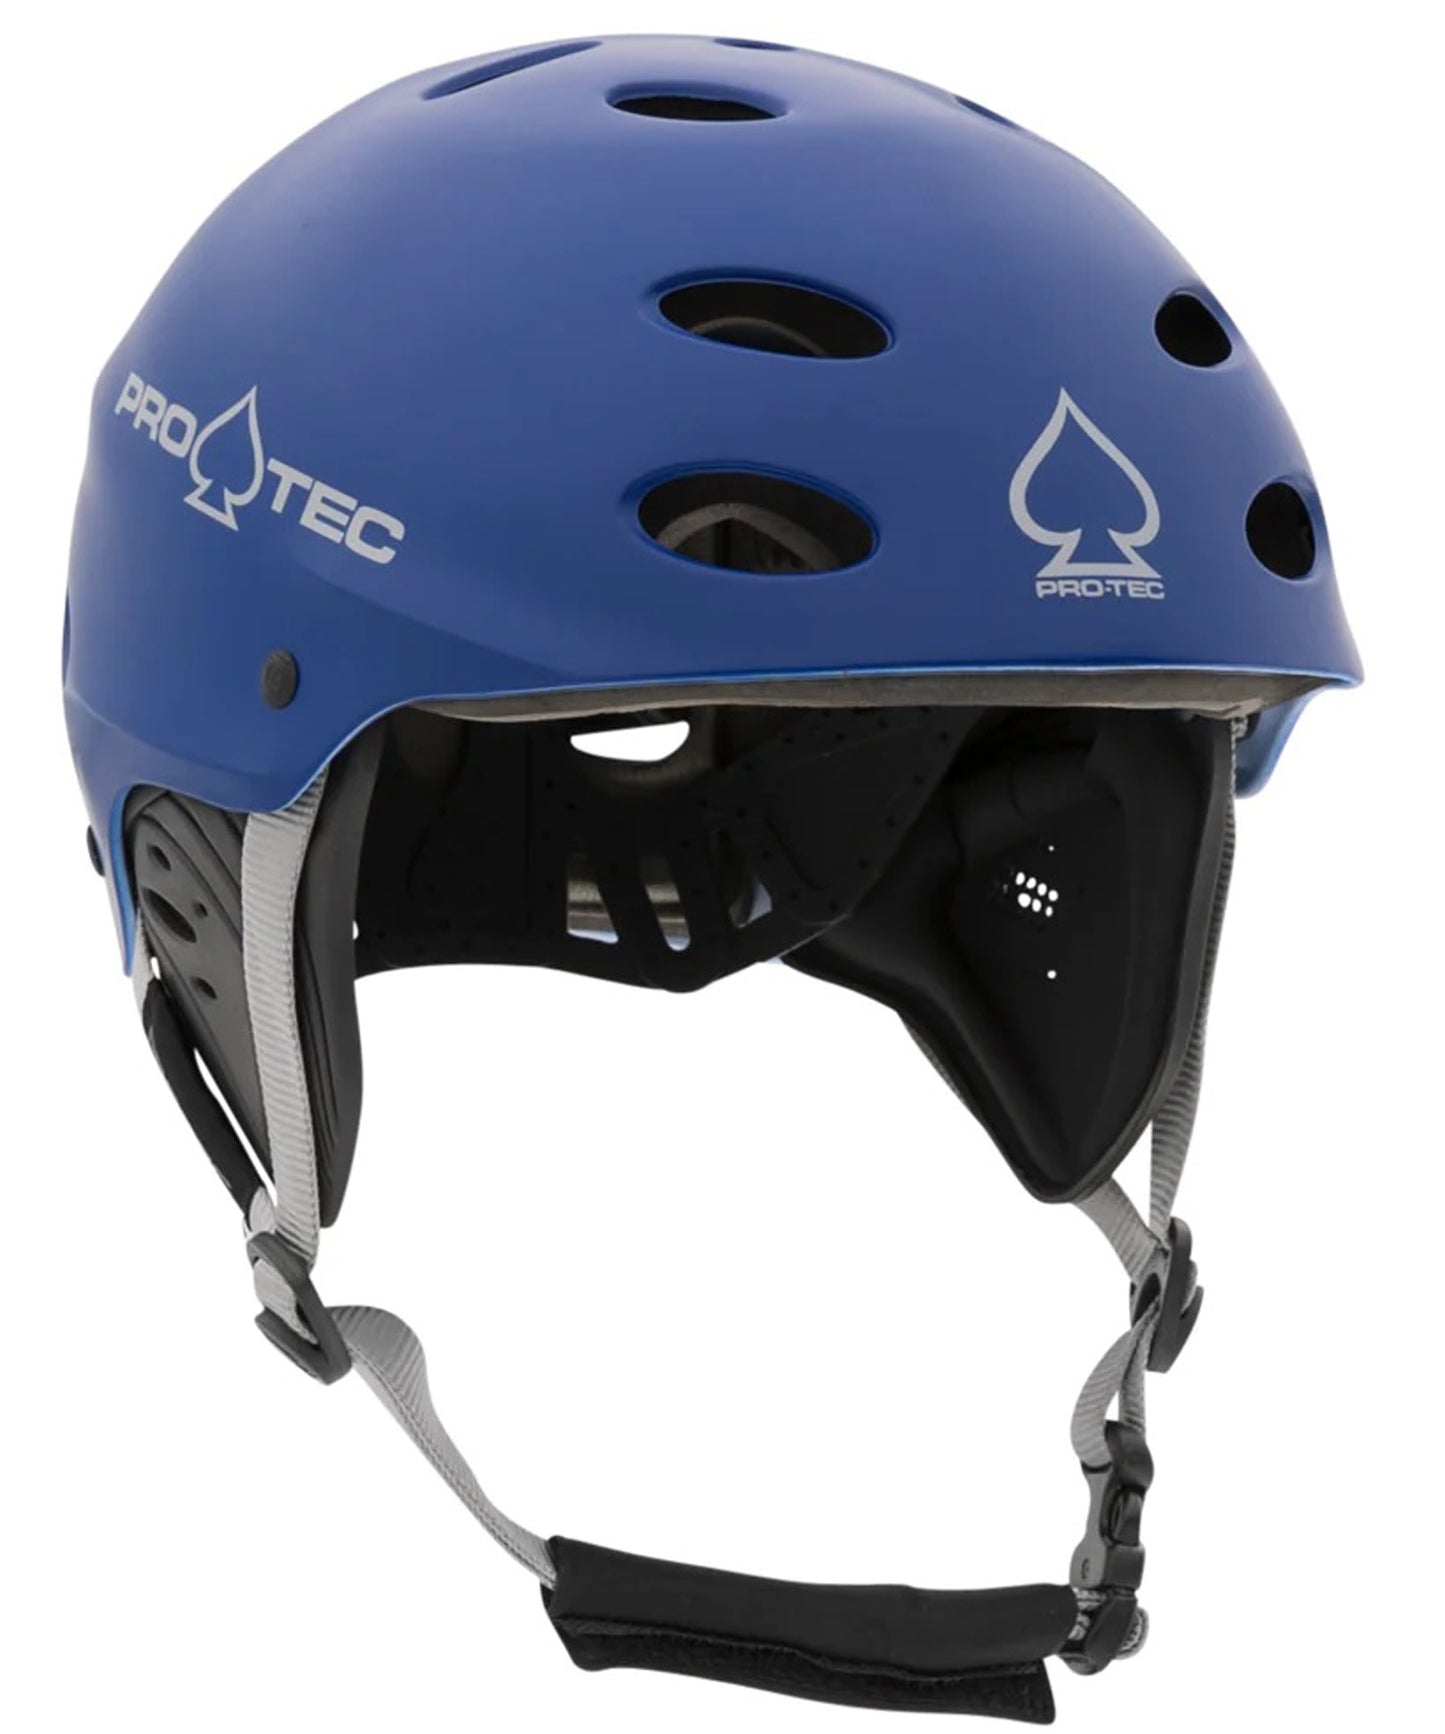 pro-tec-casco-skate-ace-water-color-azul-impermeable-15-orificios-ventilación-para-skate-patín-kayak.